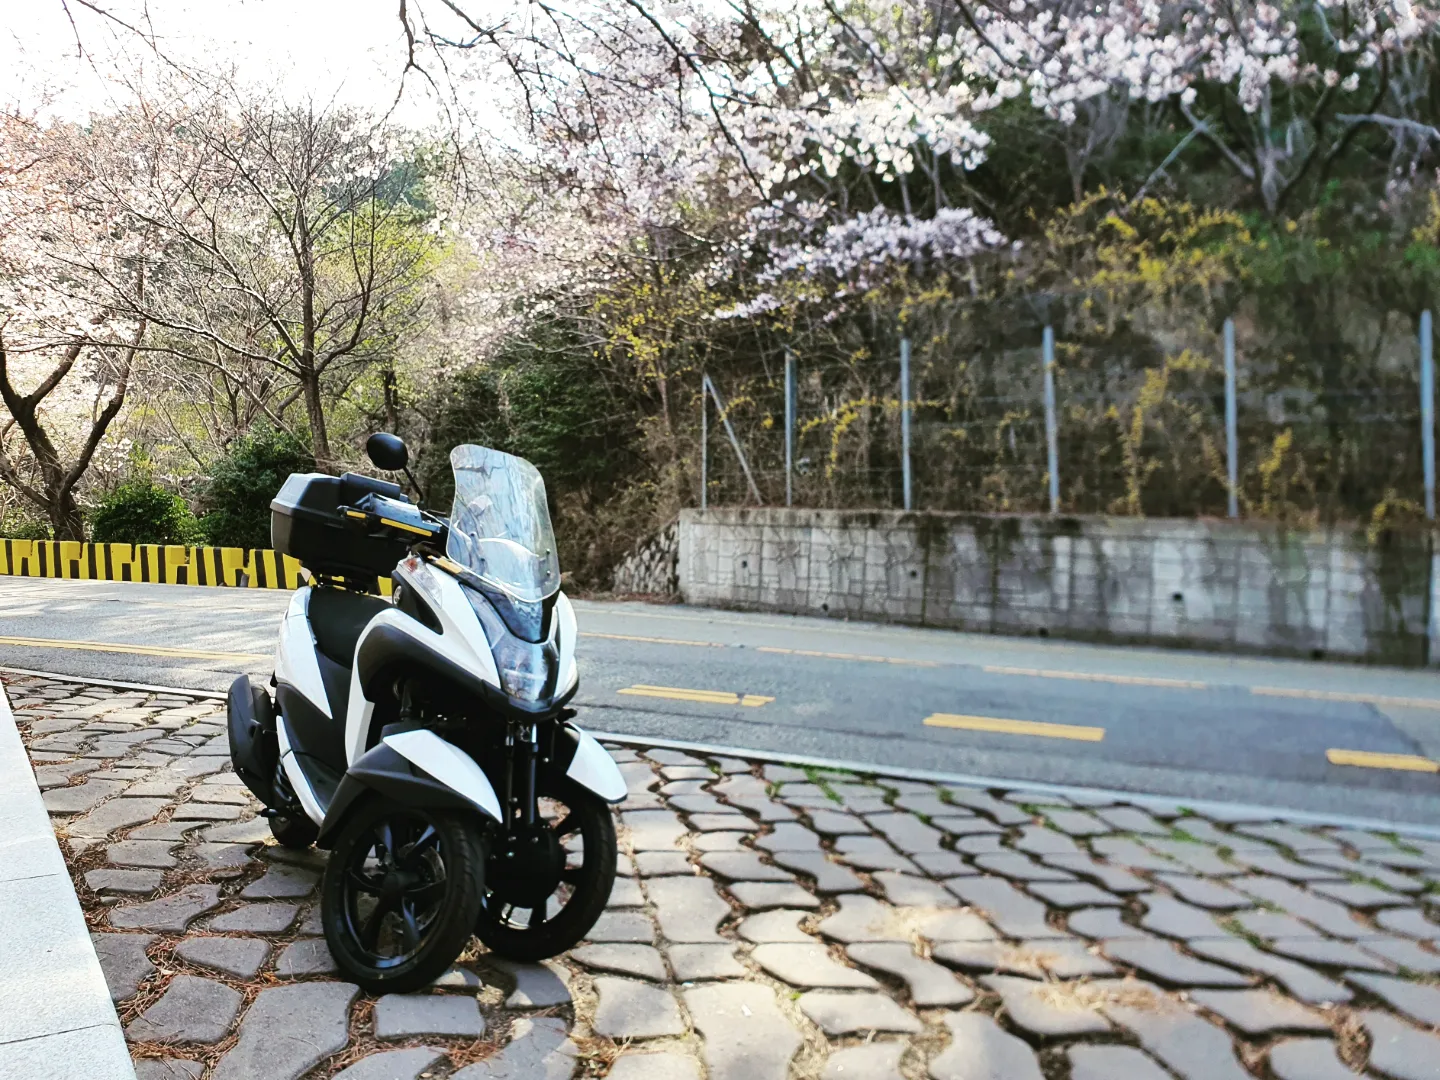 흰색 오토바이가 주차되어 있는 사진